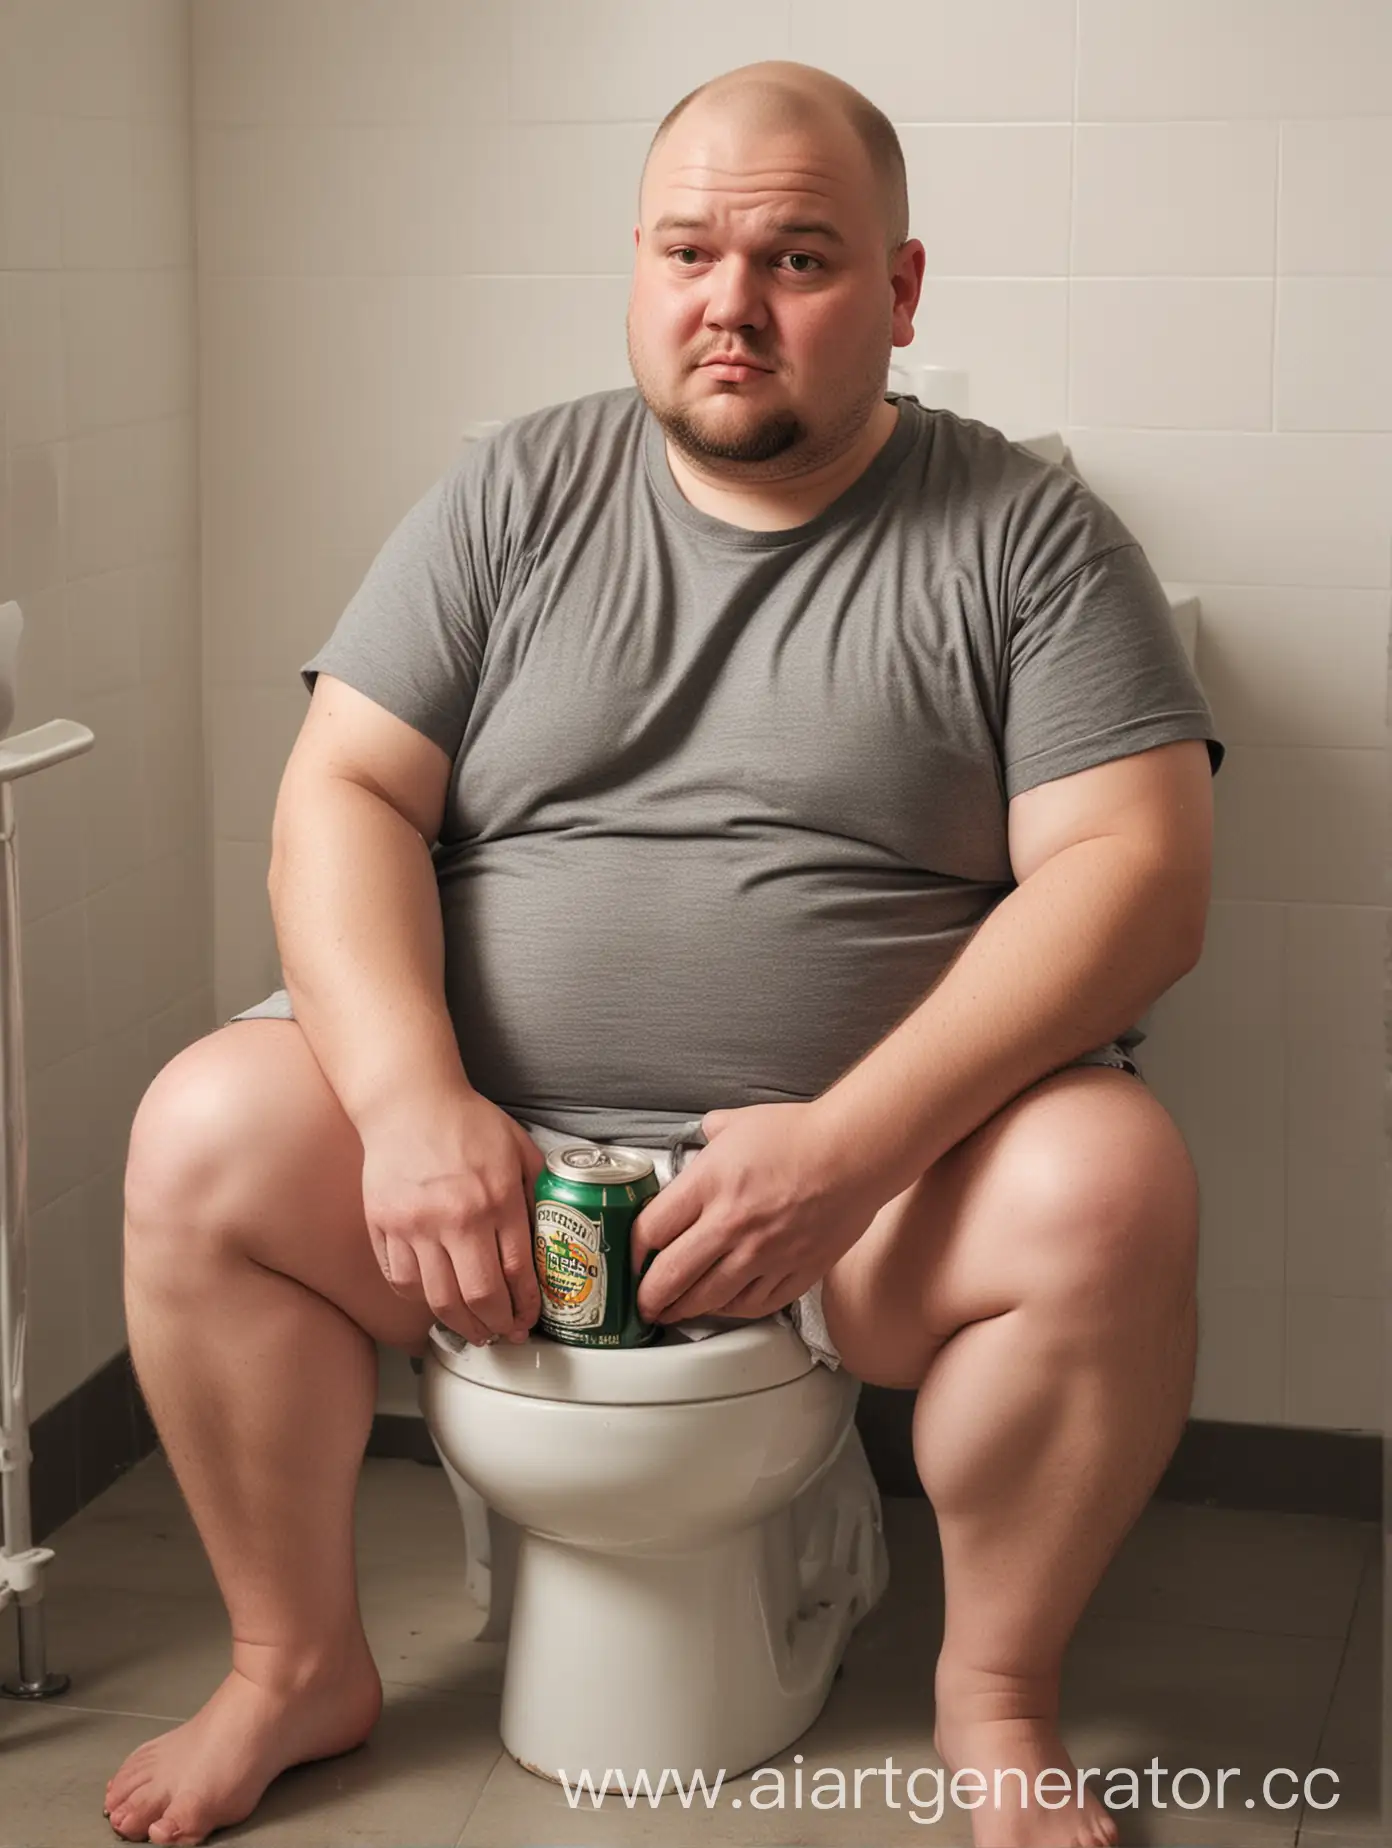 Жирный человек, сидит на туалете, в майке, смотрит на нас, у него небольшая лысина, рядом с туалетом стоит бутылка с пиво